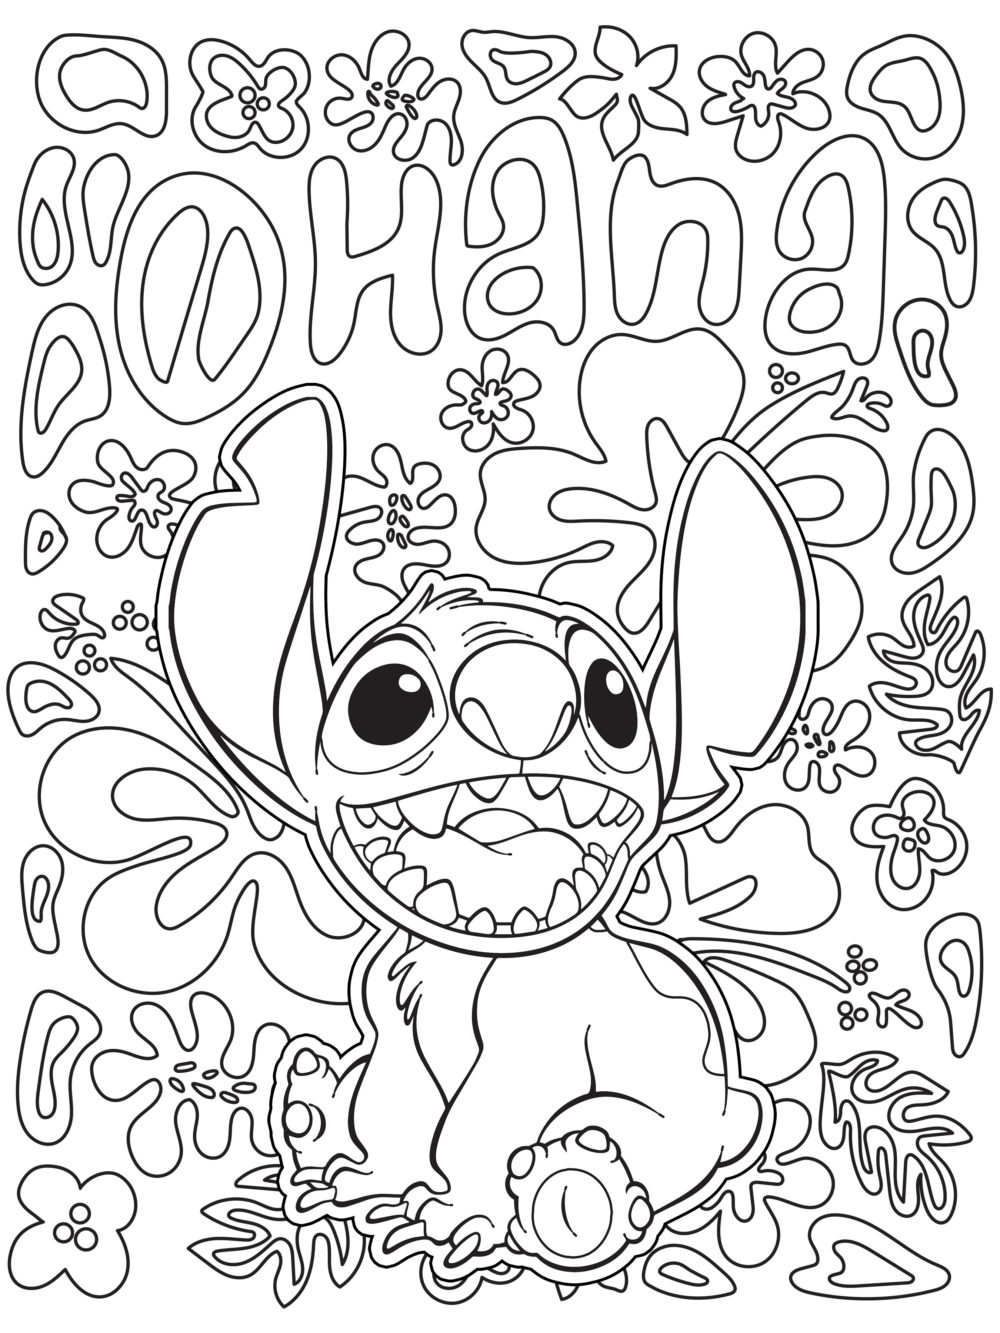 Lilo and Stitch Coloring Page   Lilo & Stitch foto 20   fanpop